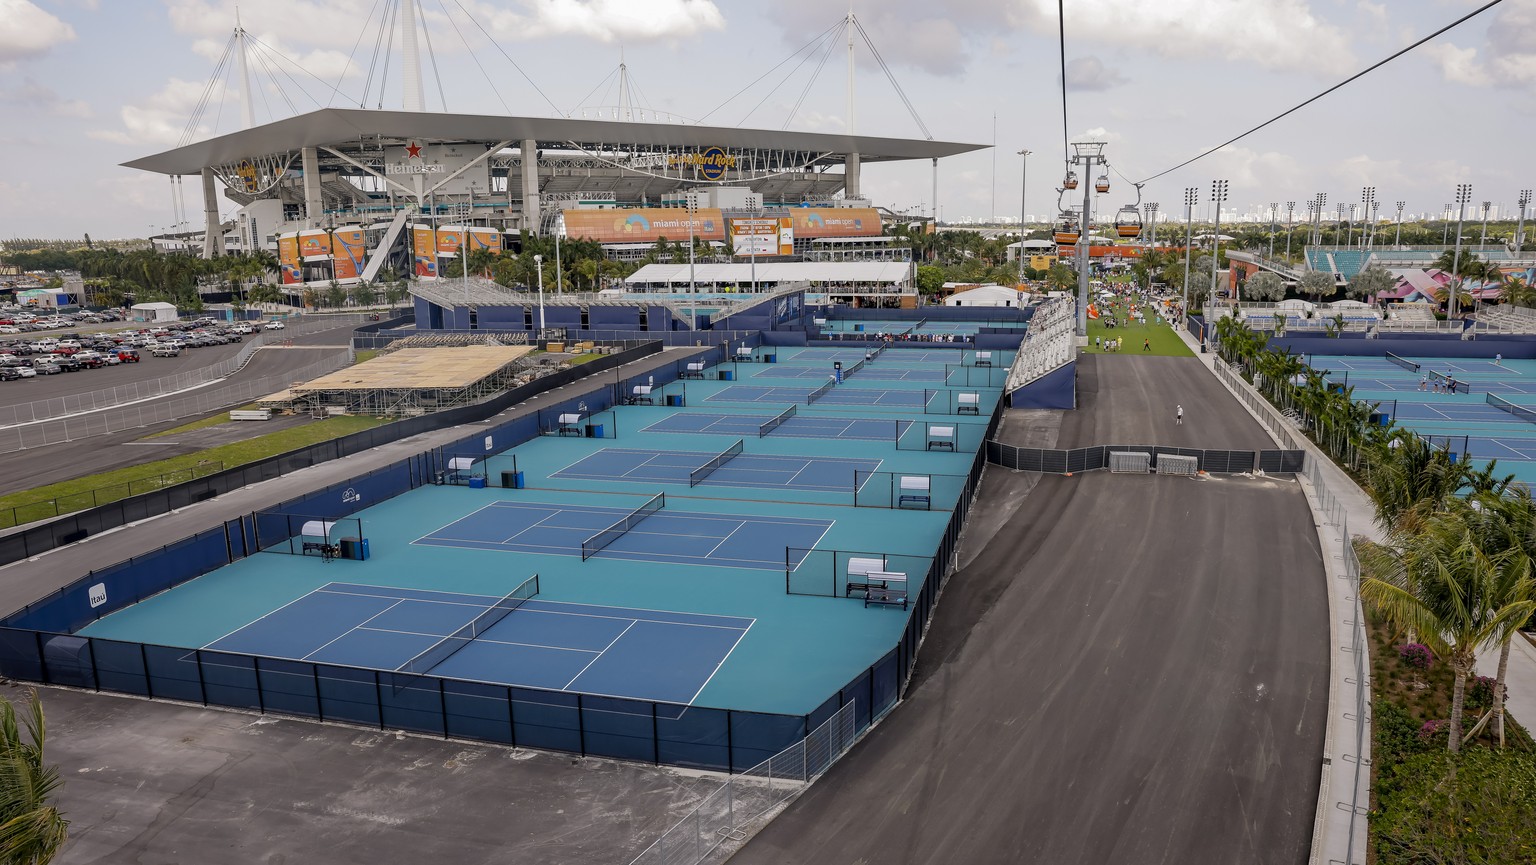 Sportliche Gegend: Die Rennstrecke neben Tennisplätzen des Miami Open und dem Football-Stadion der Dolphins.